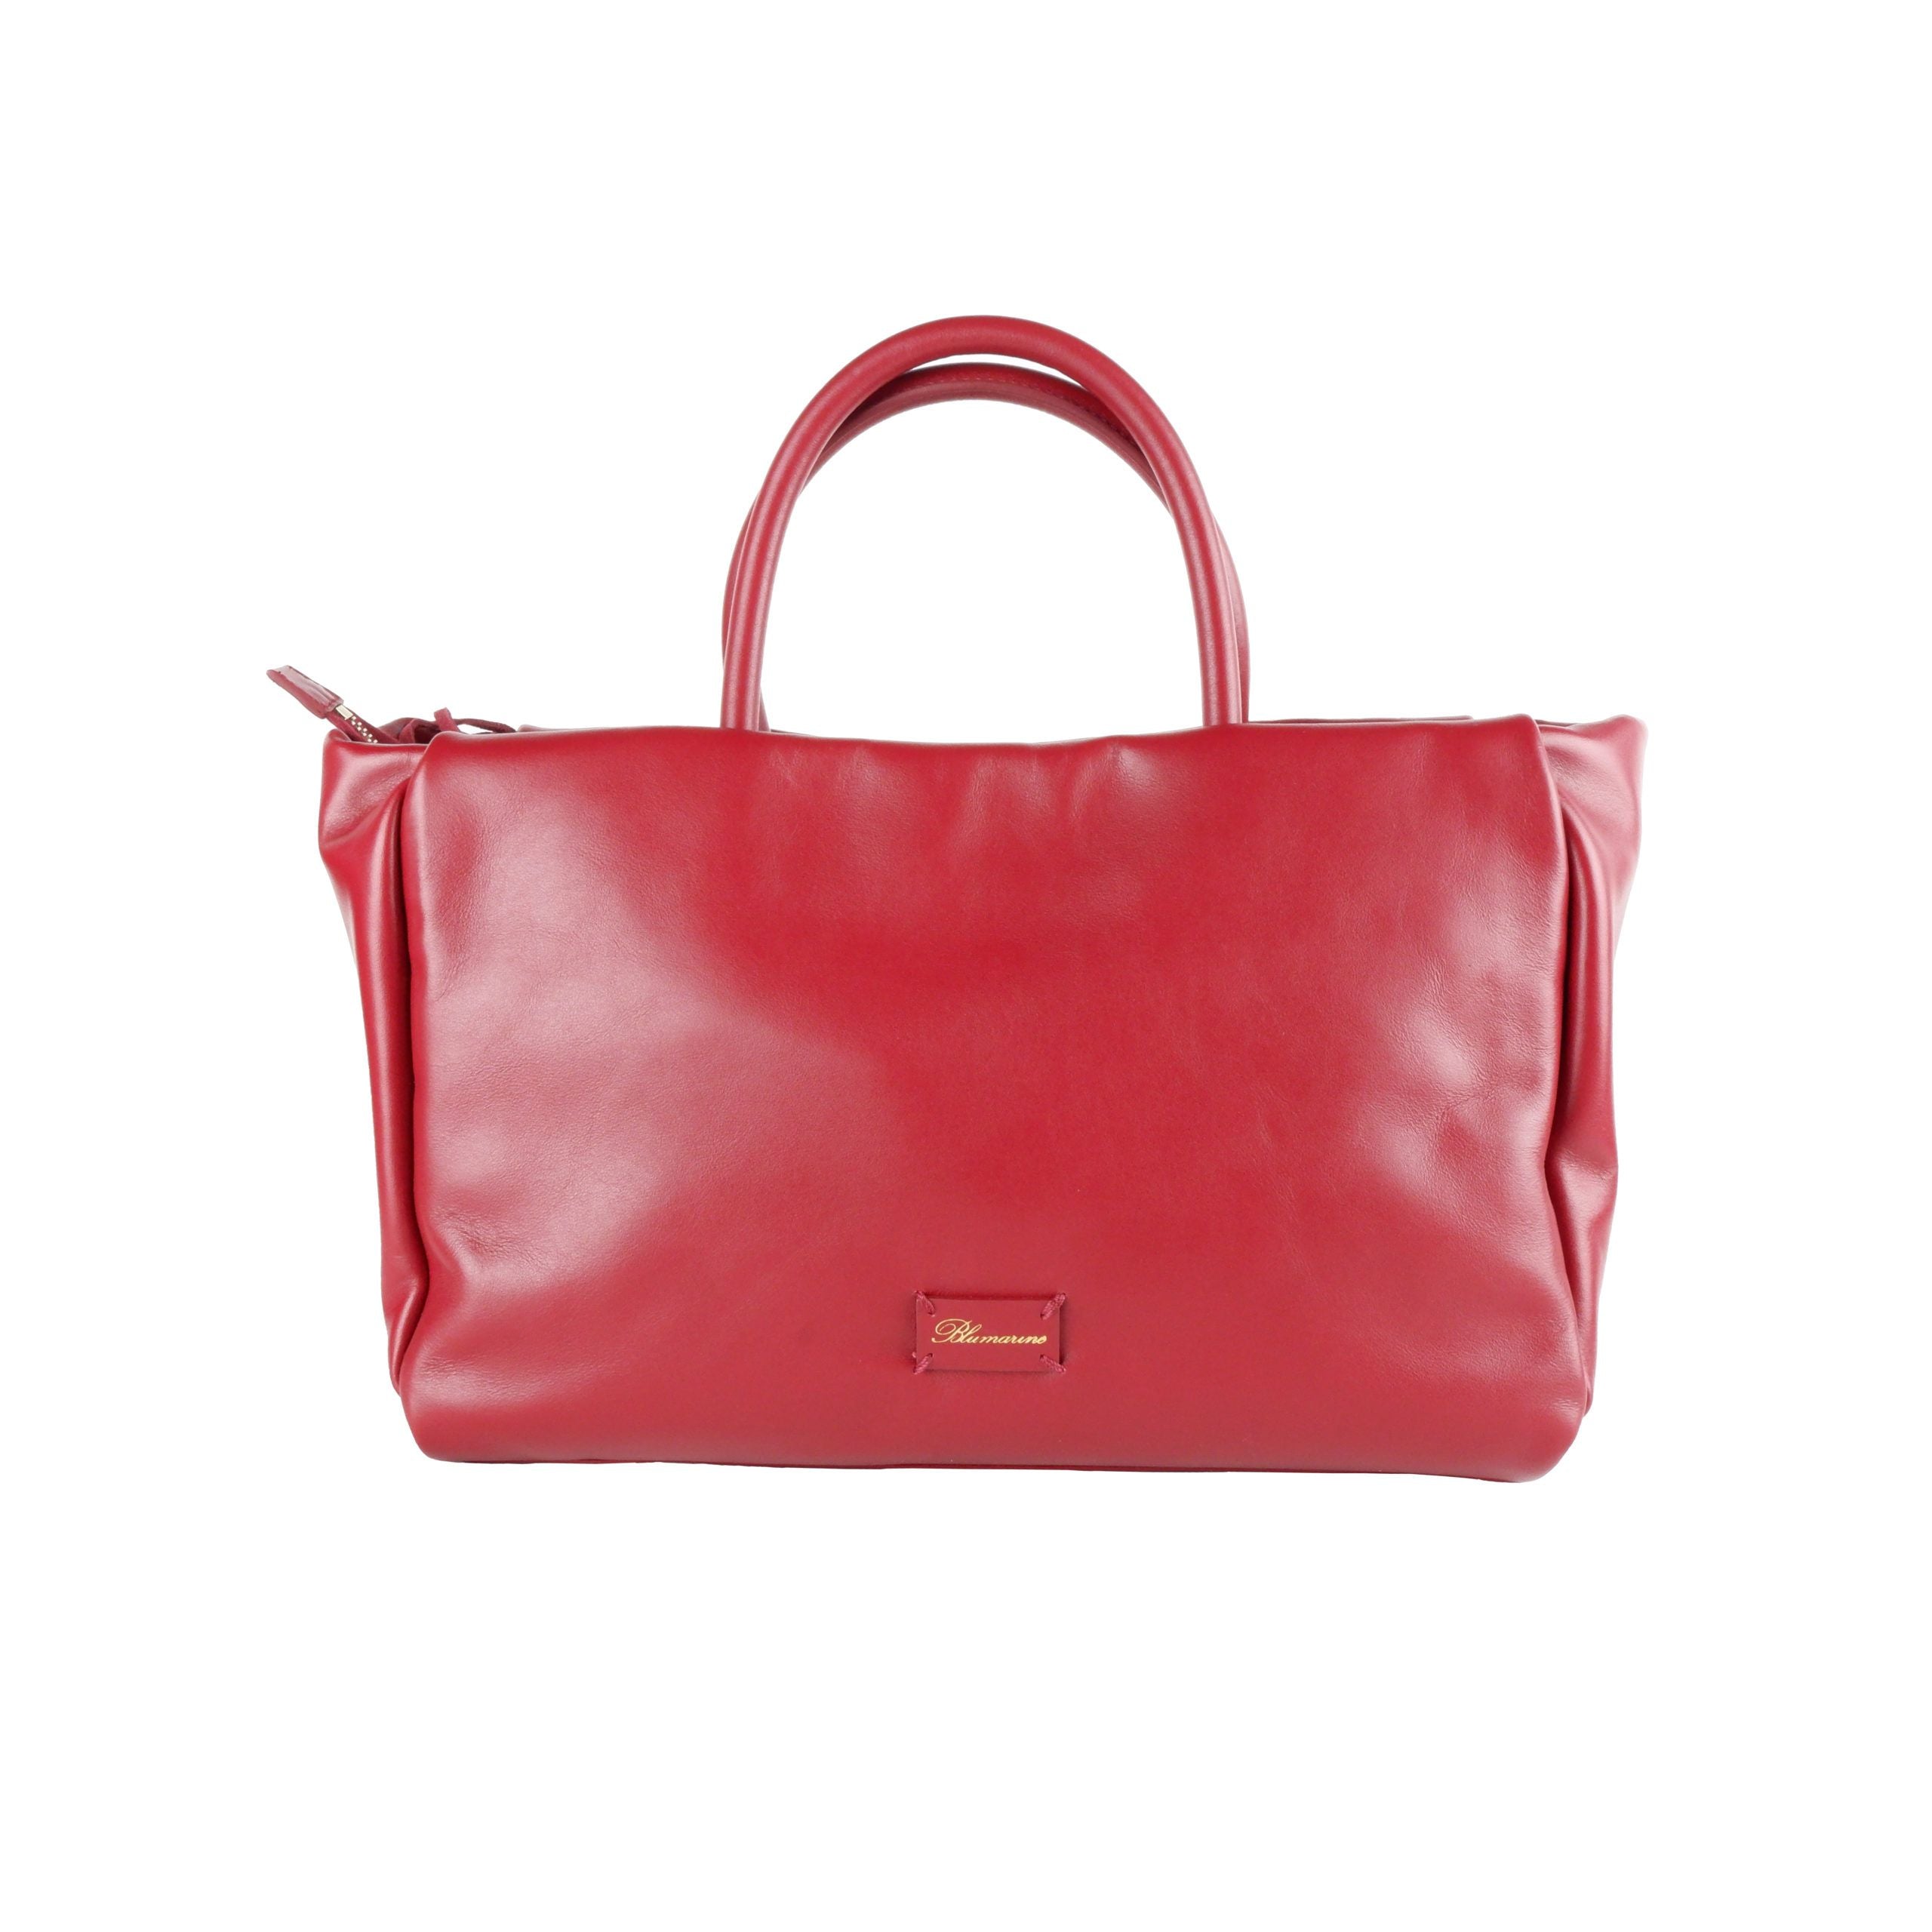 Blumarine Red Calfskin Handbag